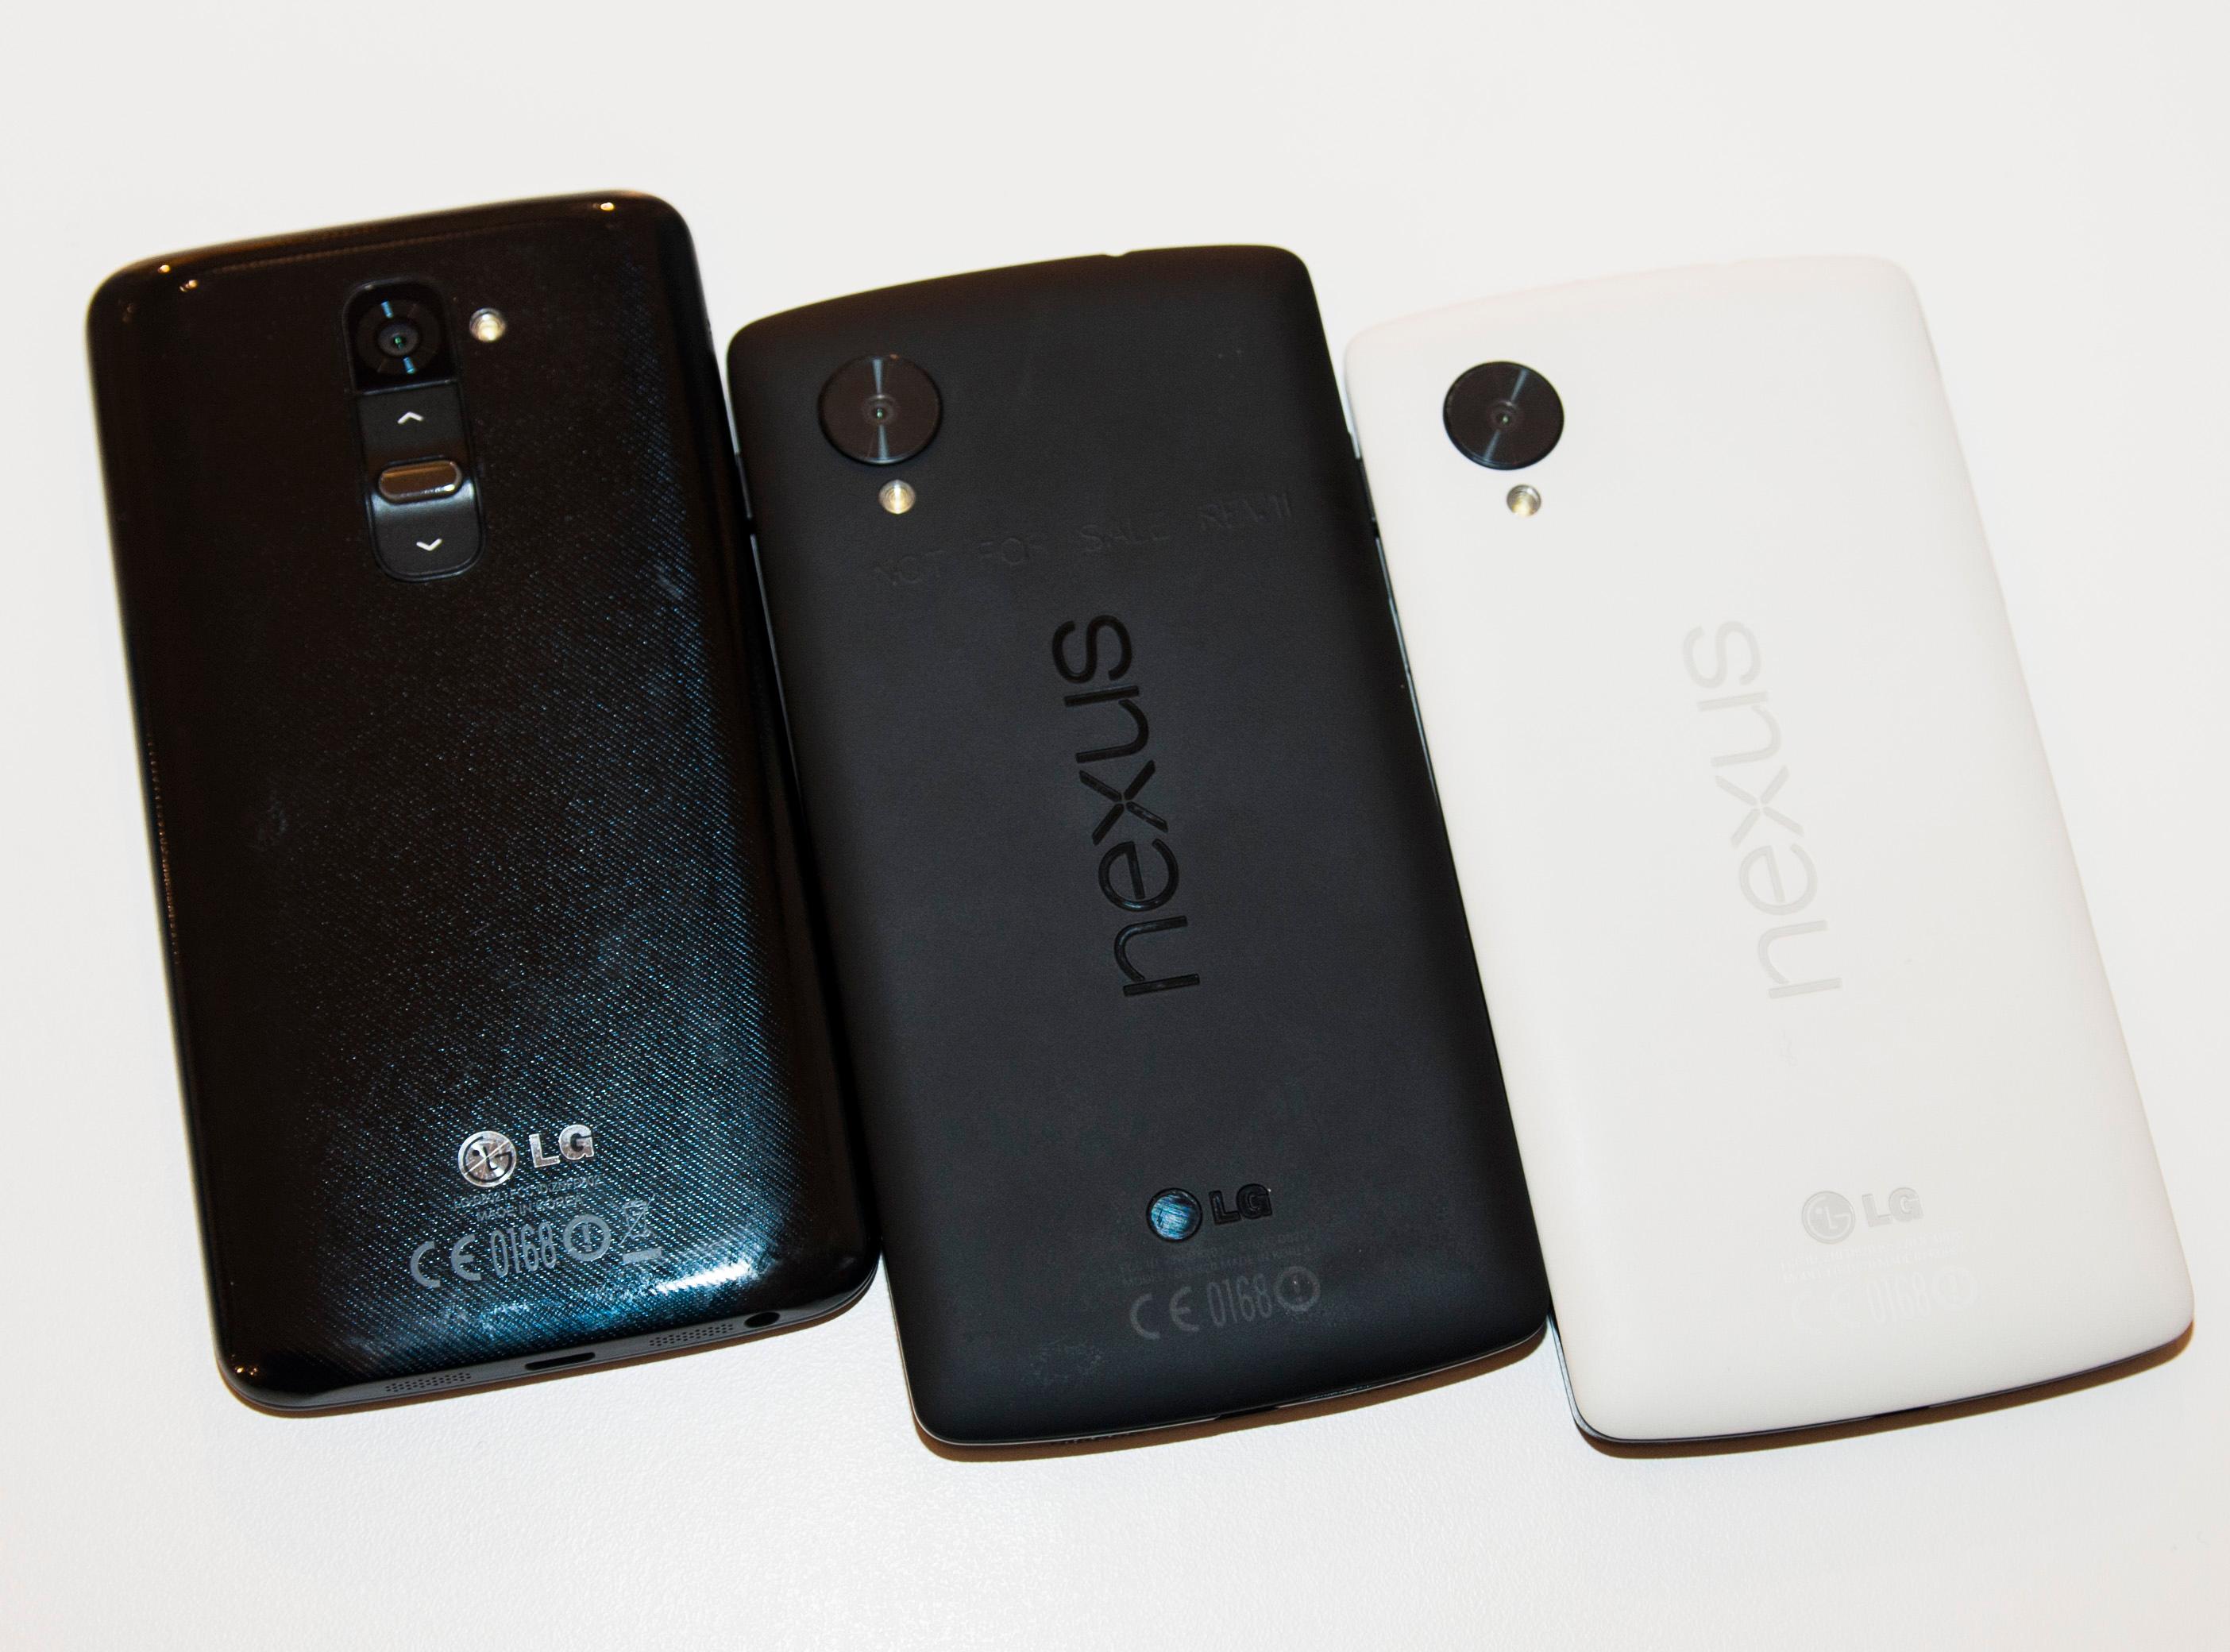 De nye ryktene hevder at Nexus 6 vil ha mye til felles med LGs kommende toppmodell, G3. Akkurat slik dagens Nexus 5 har mye til felles med G2 (til venstre i bildet).Foto: Finn Jarle Kvalheim, Amobil.no